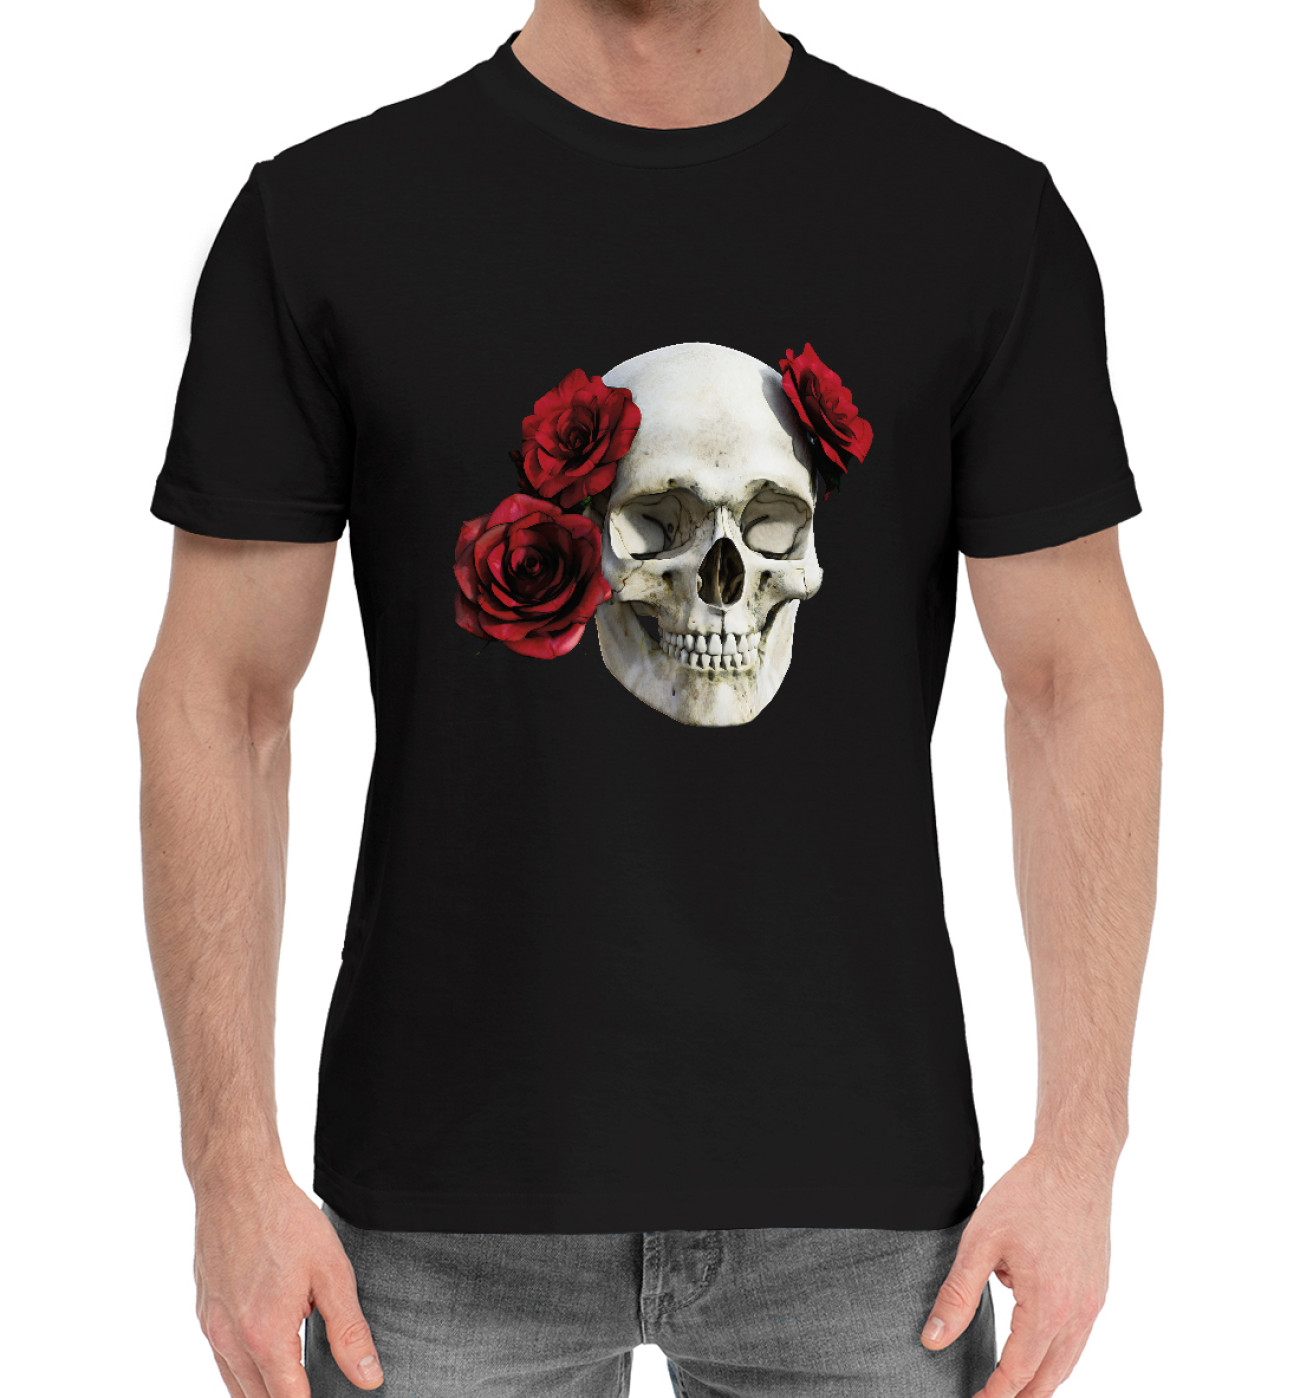 Мужская Хлопковая футболка Череп с розами, артикул: SKU-809621-hfu-2